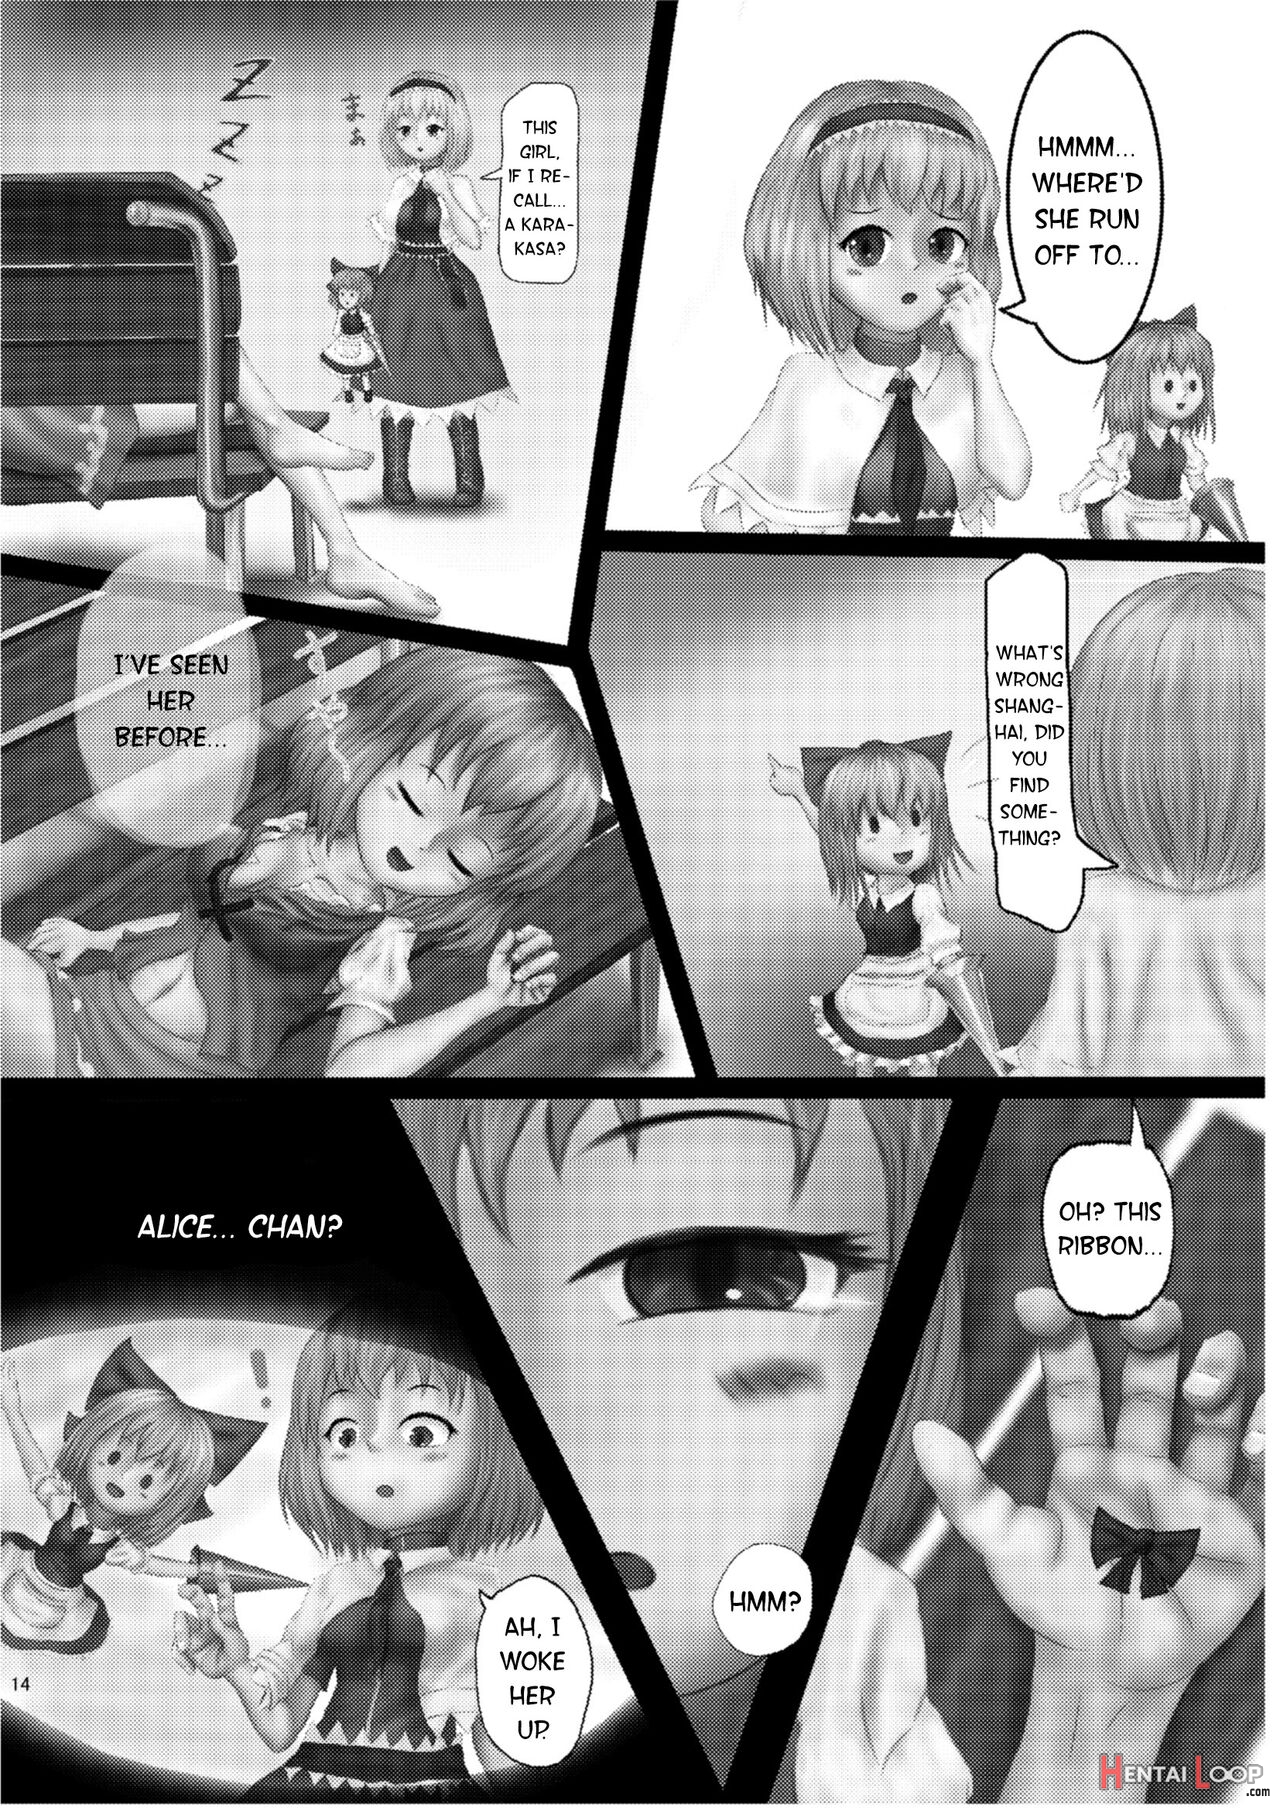 Kounai-ishouka Manga page 10